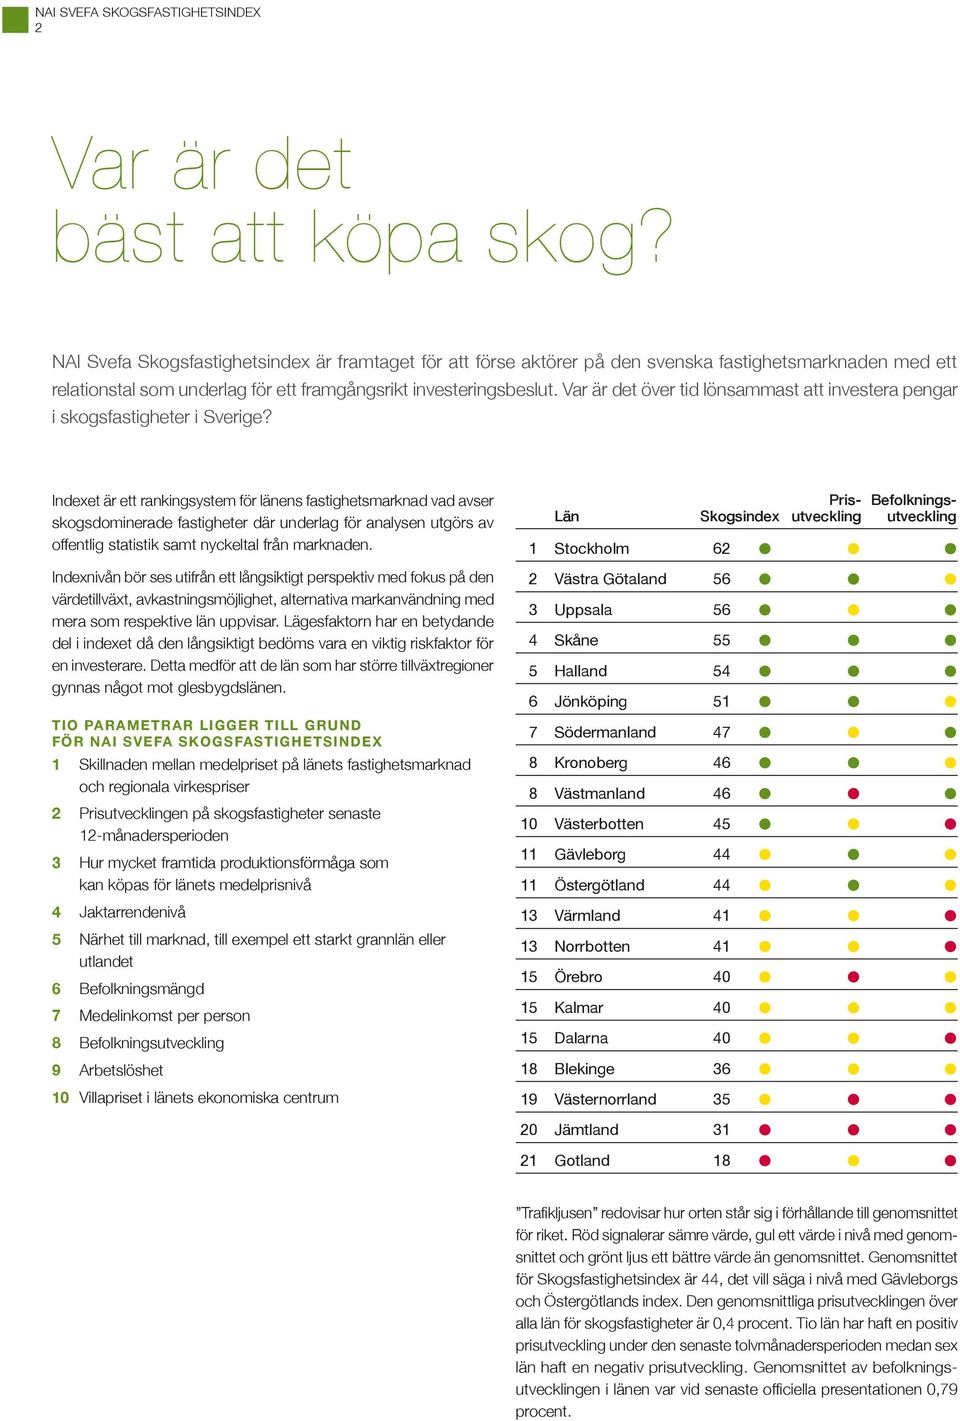 Var är det över tid lönsammast att investera pengar i skogsfastigheter i Sverige?